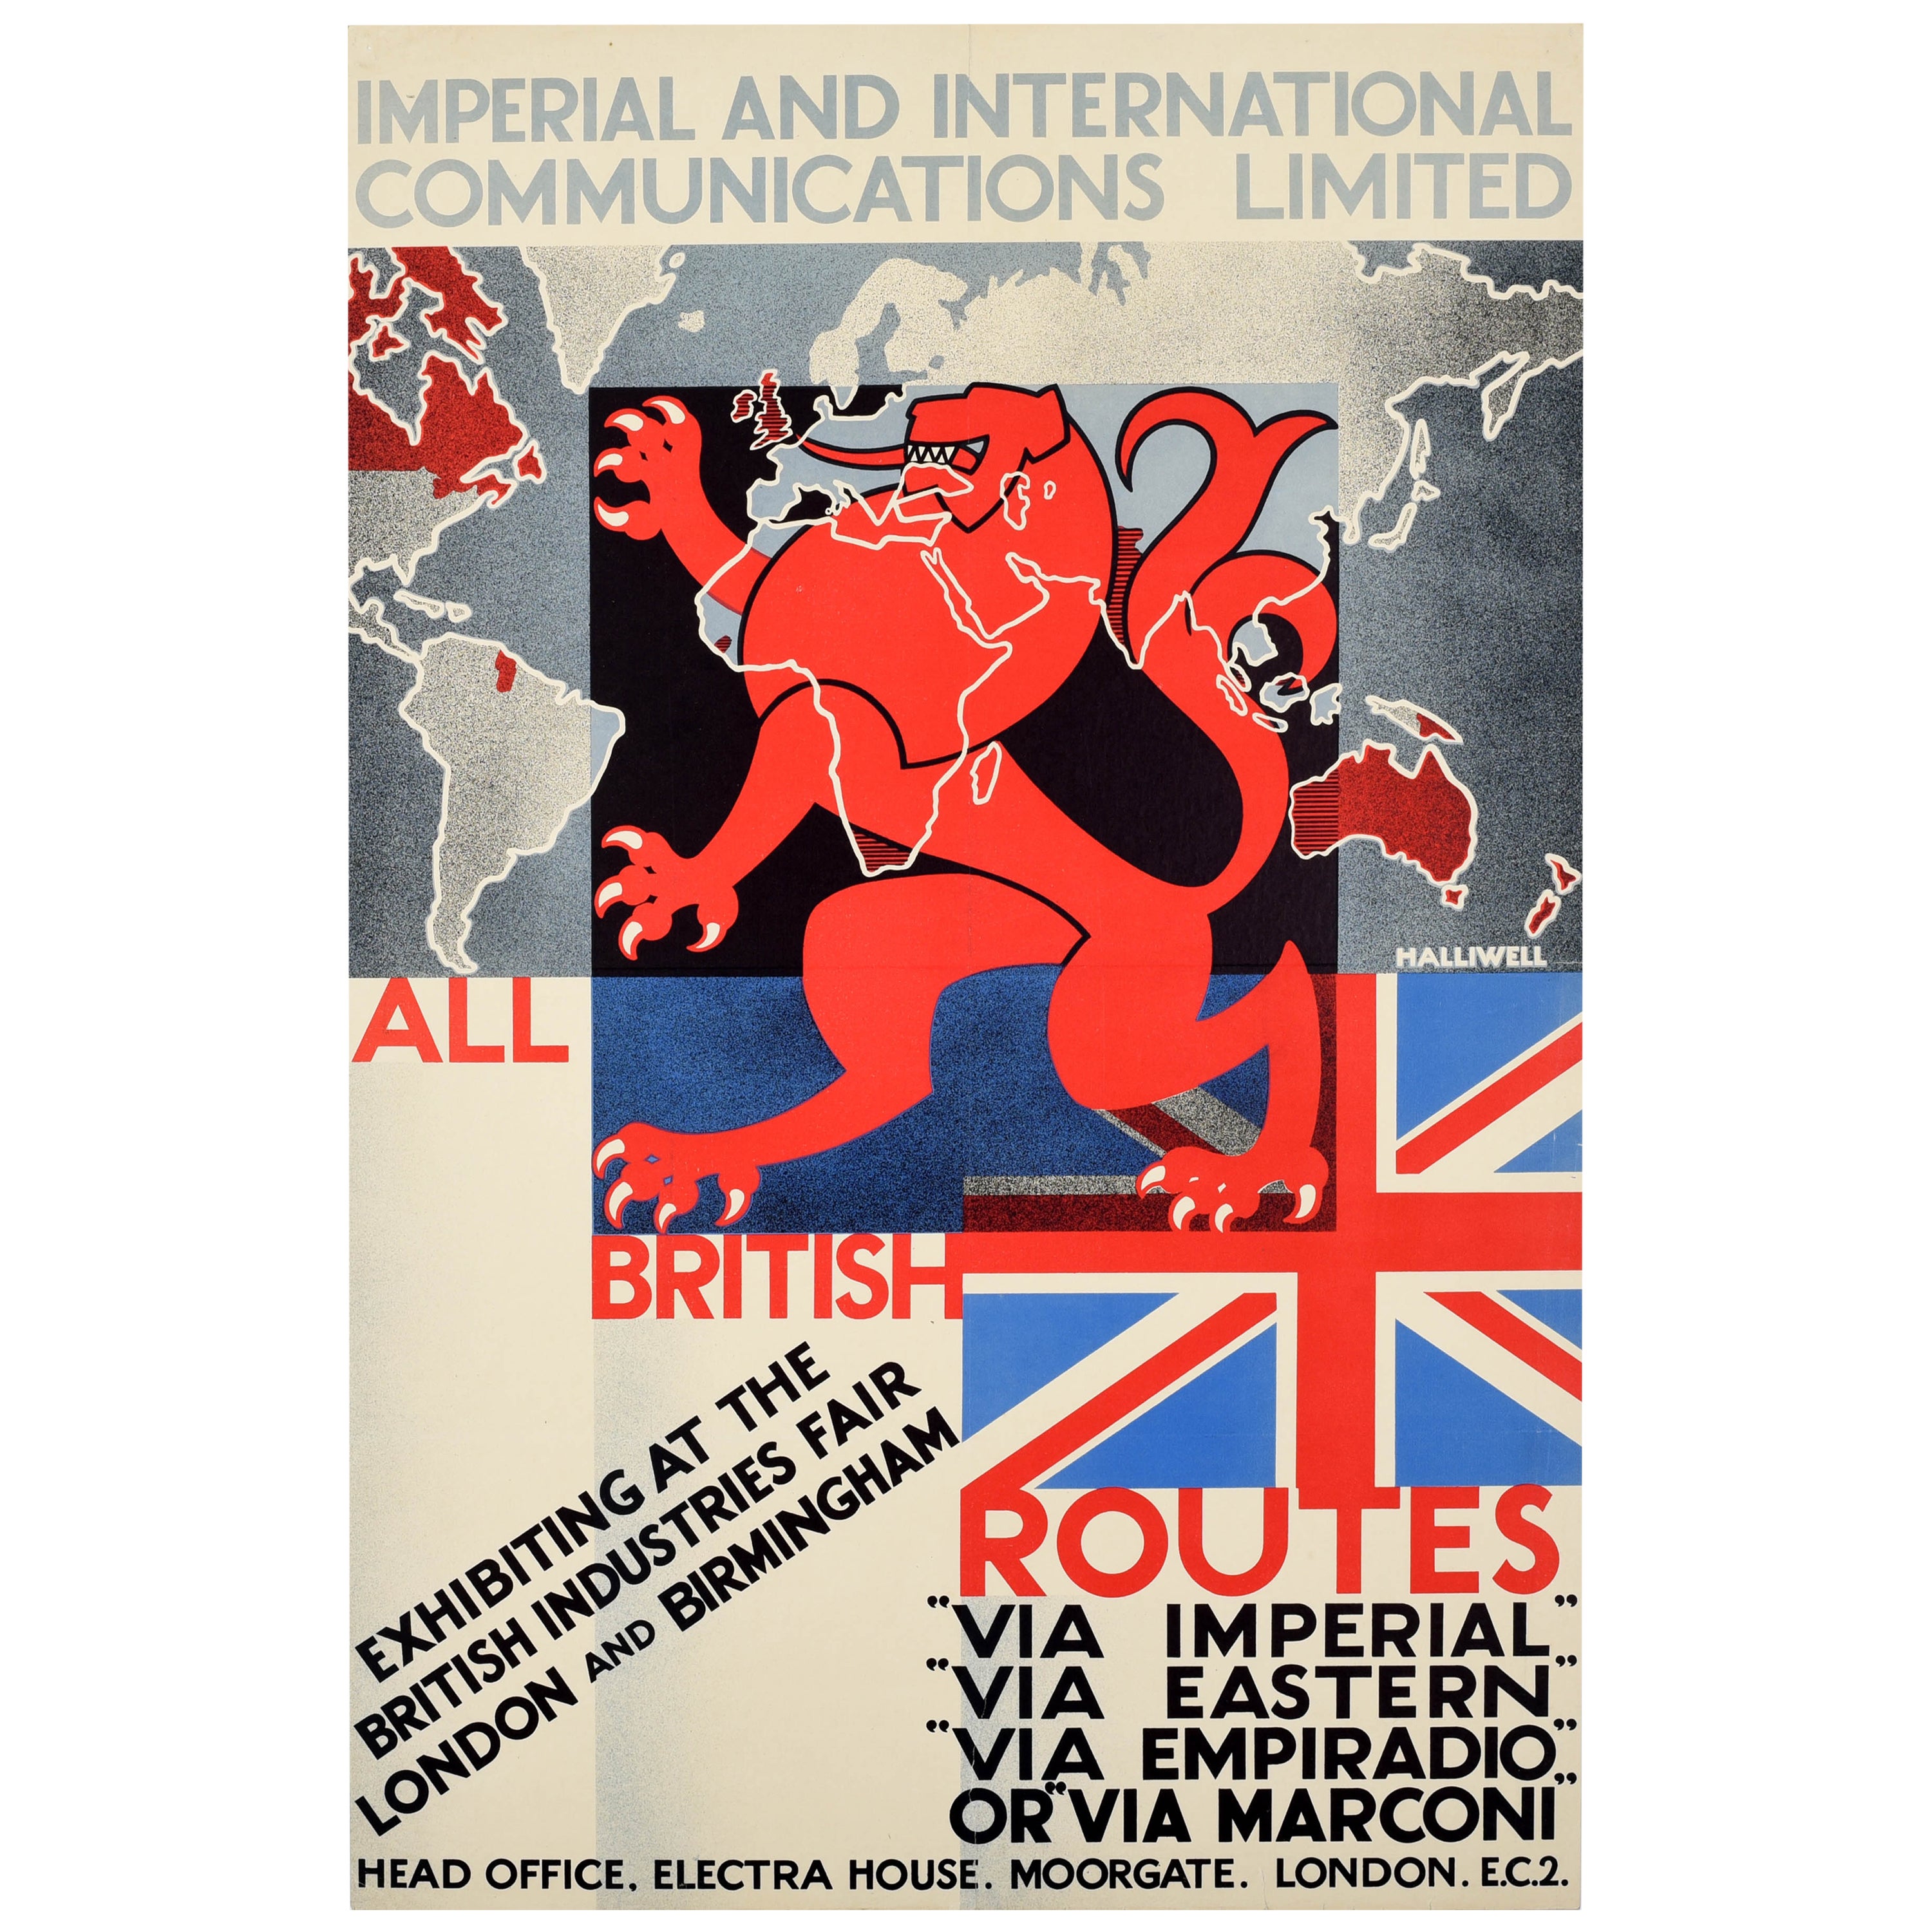 Affiche rtro originale de l'industrie britannique des communications impriales de Marconi